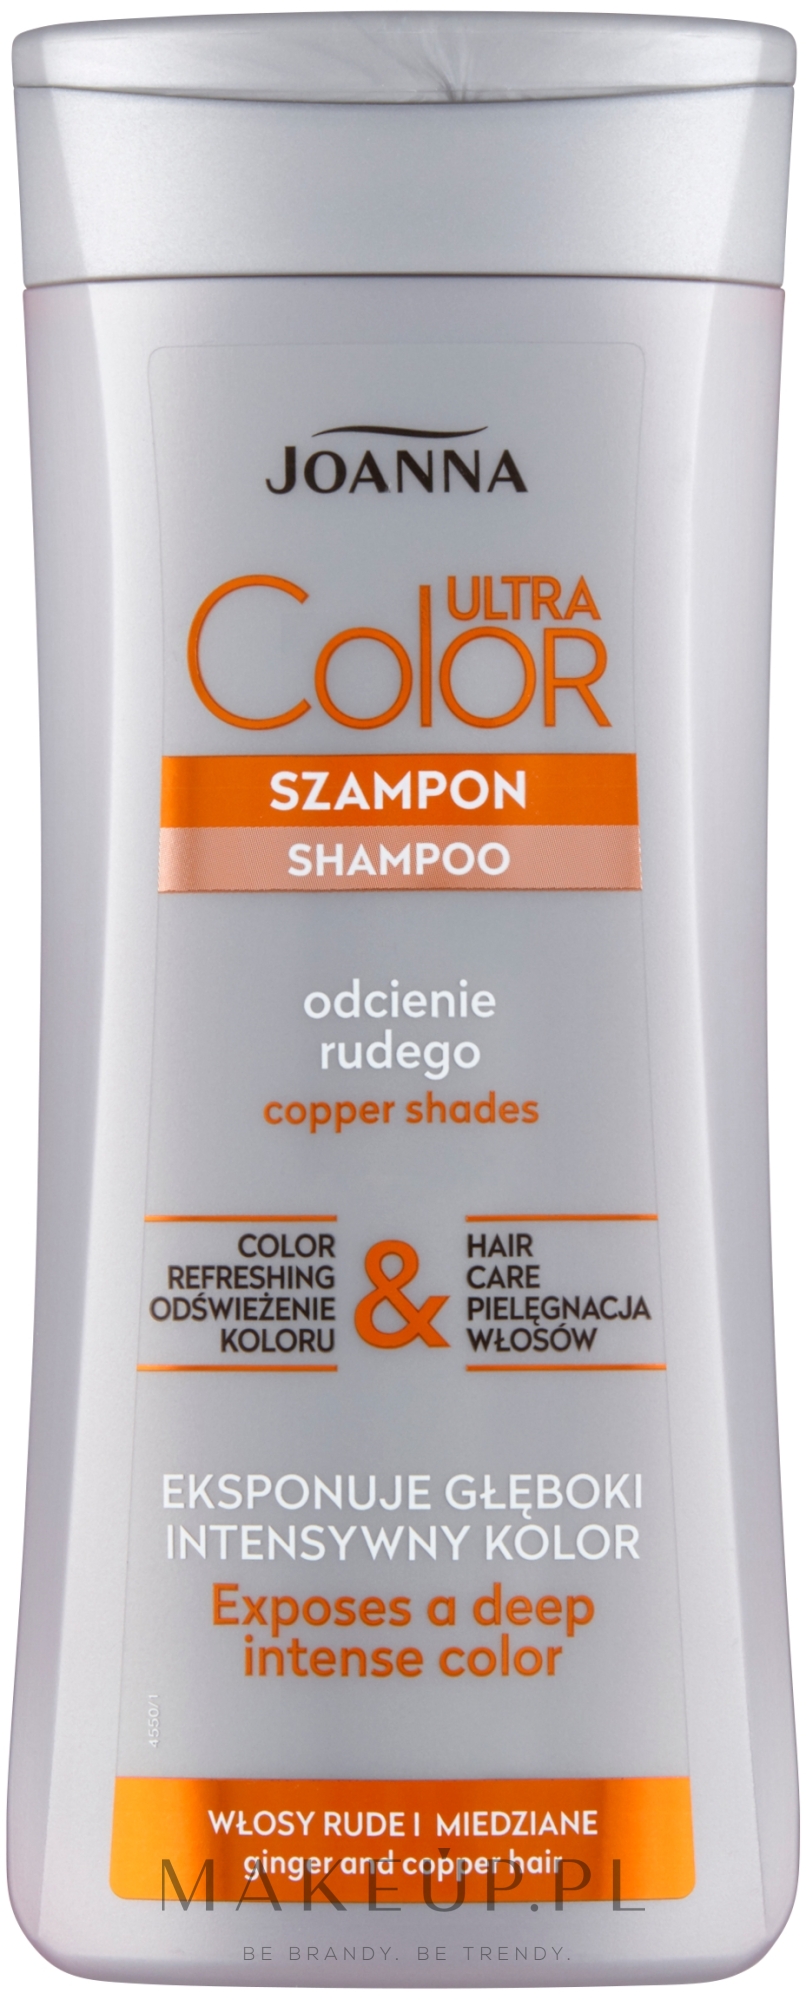 szampon do pomarańczowych włosów